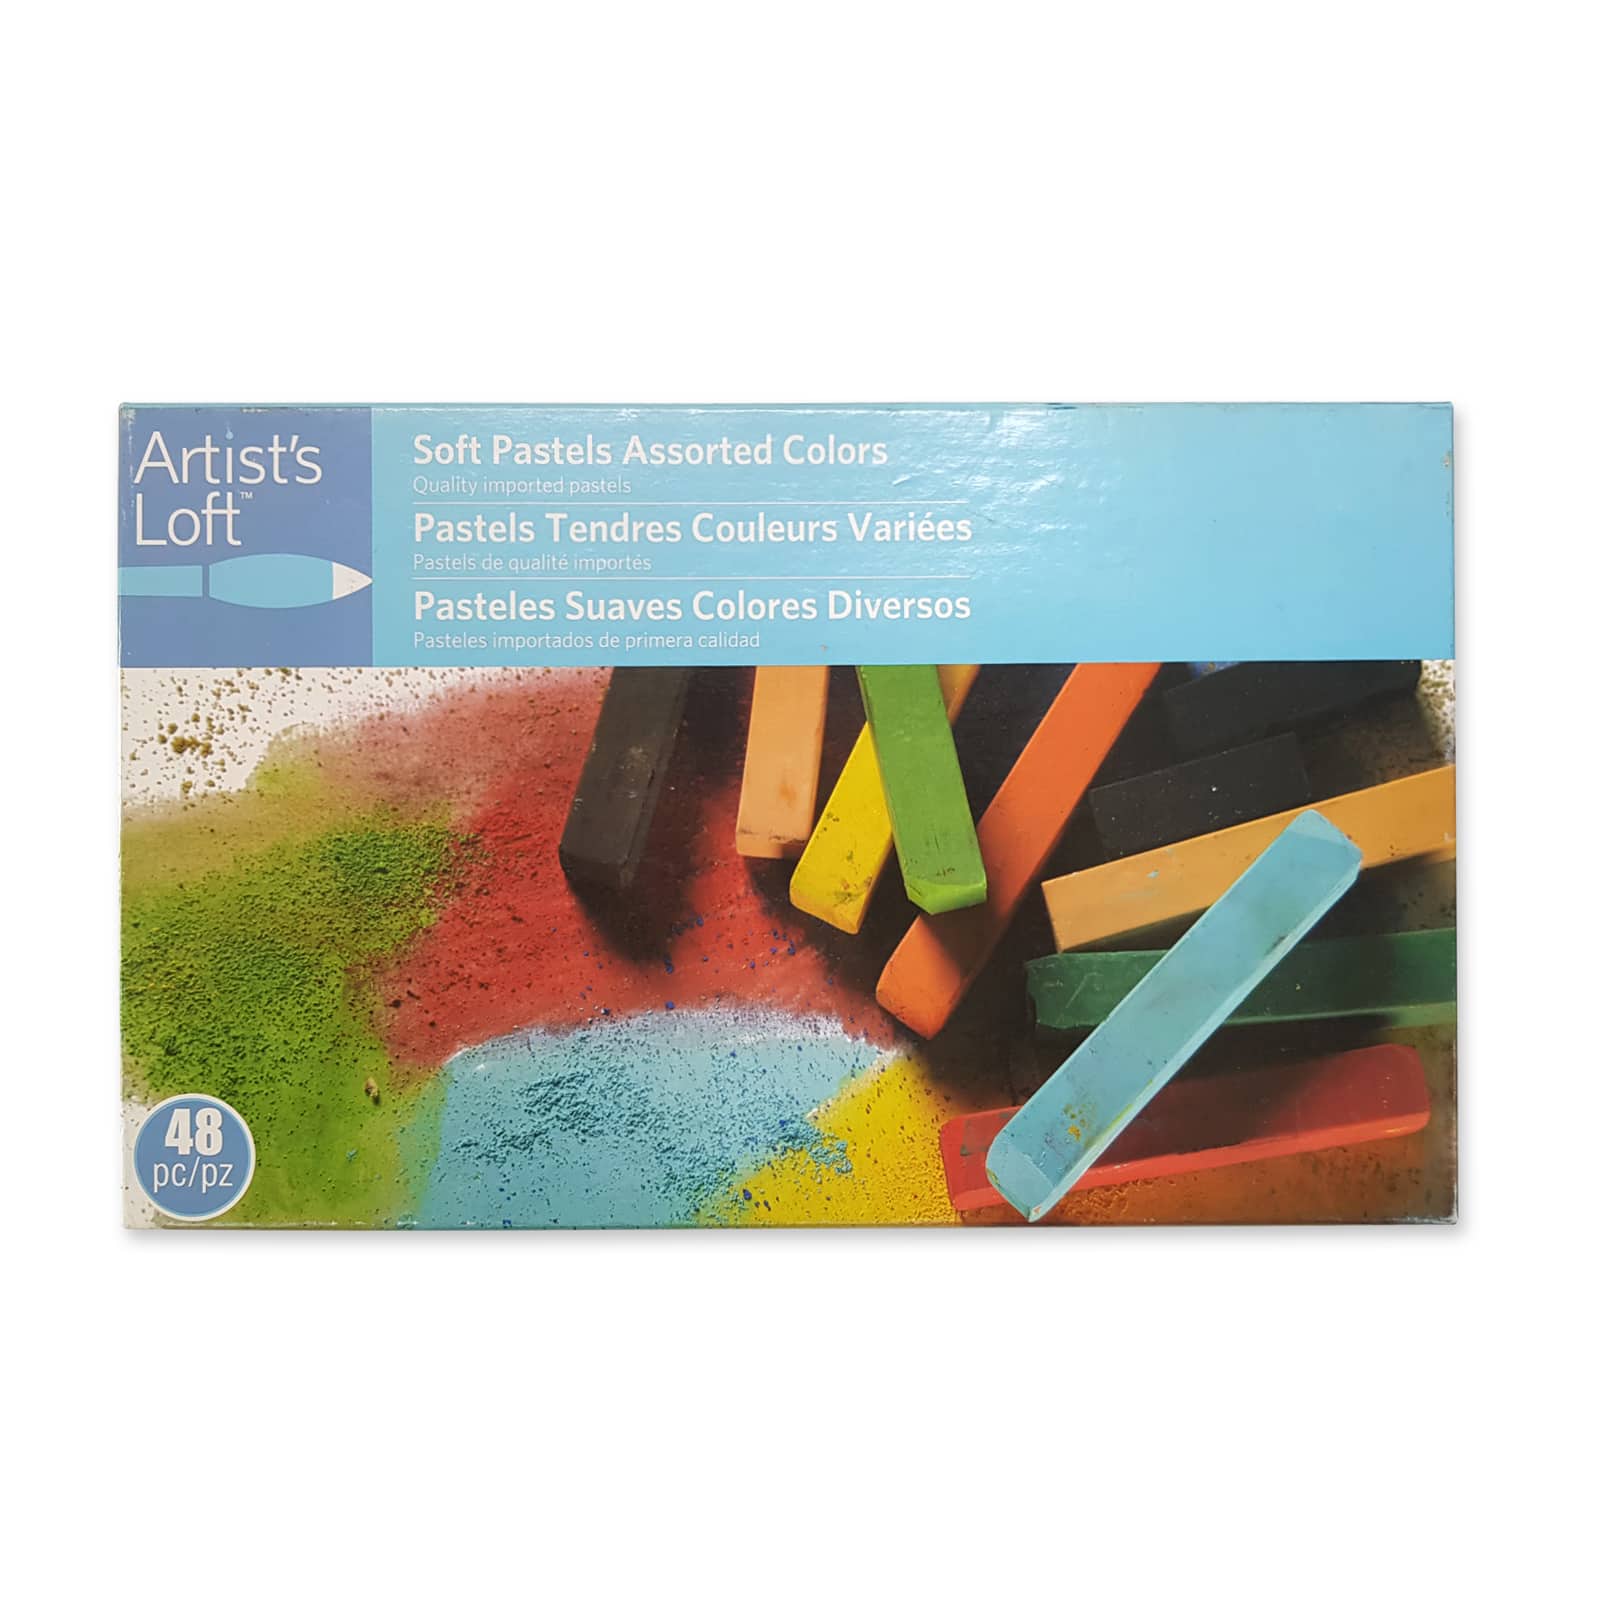 6 Packs: 48 ct. (288 total) Soft Pastels Colors by Artist&#x27;s Loft&#x2122;